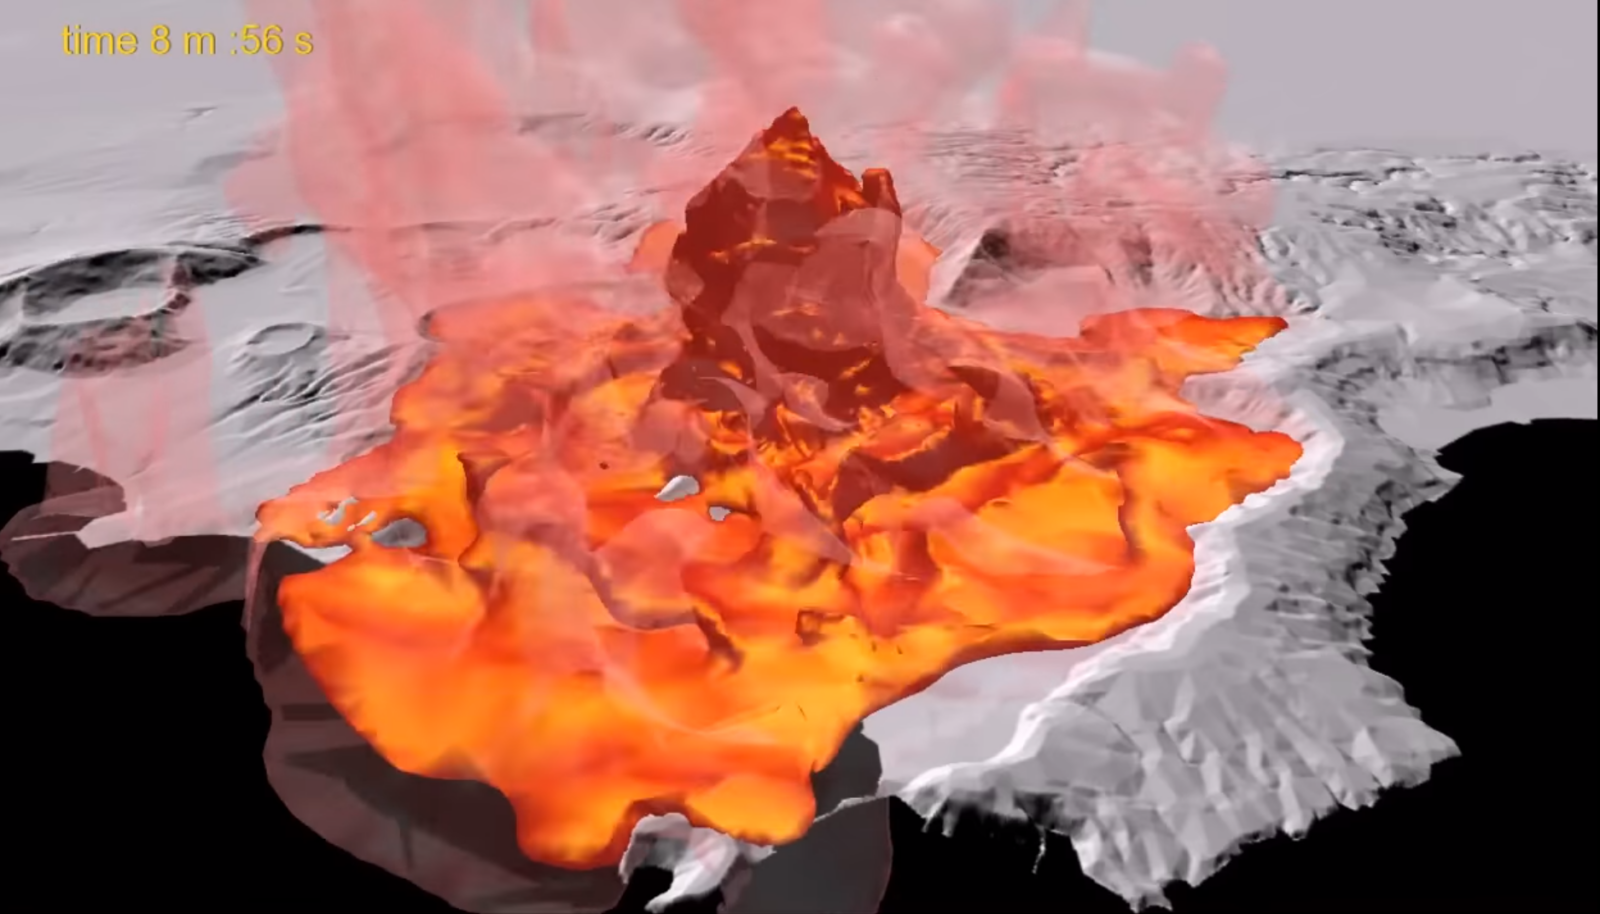 Campi Flegrei, video simula cosa accadrebbe in caso di eruzione